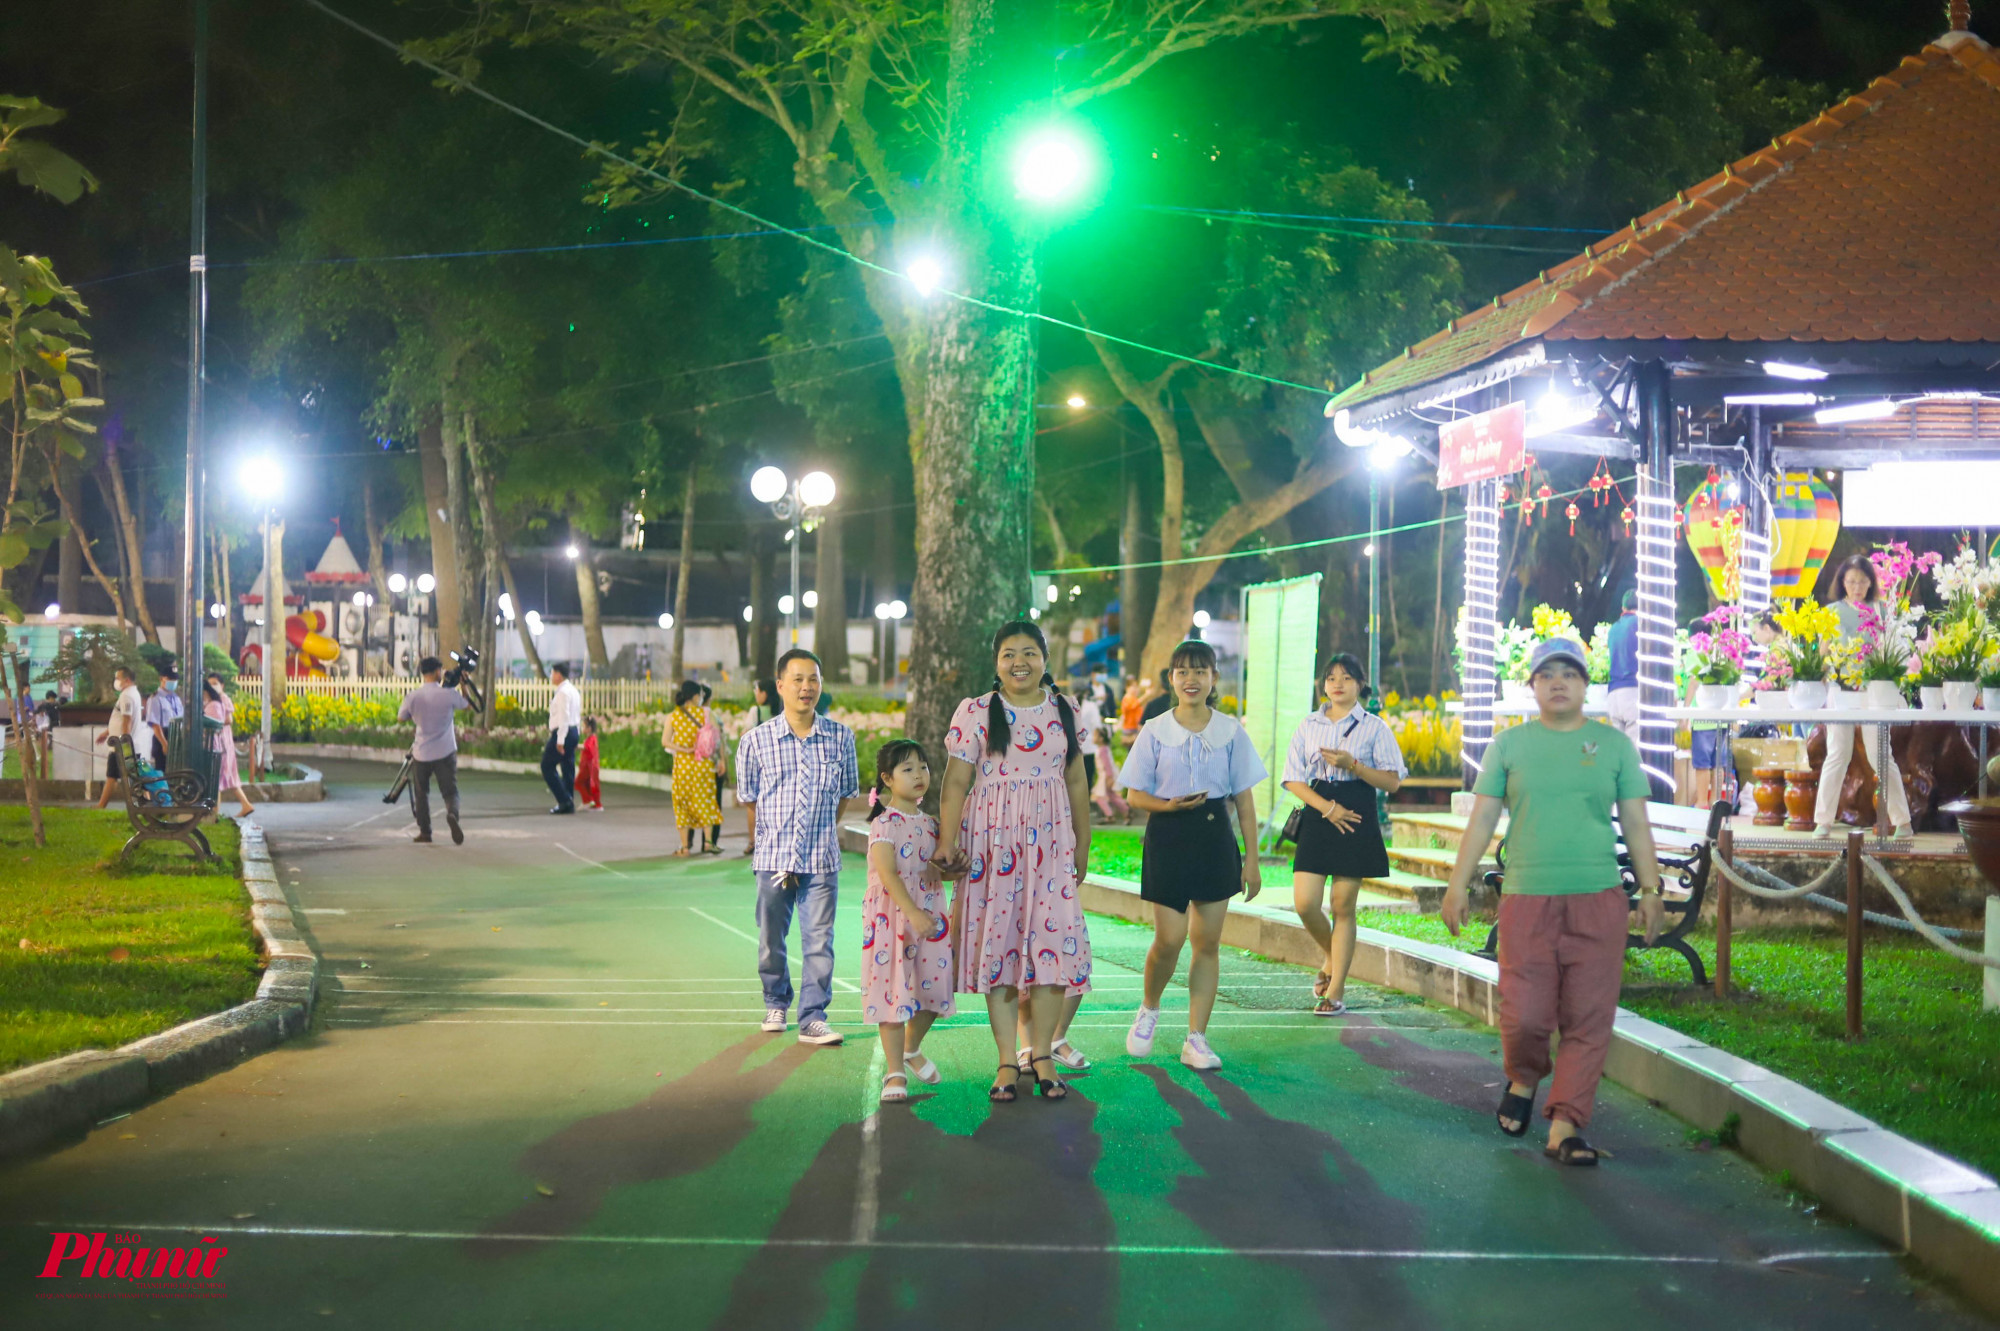 Hội hoa Xuân TP Hồ Chí Minh năm nay với chủ đề Xuân an vui - Xuân thịnh vượng lấy cảm hứng từ sự vươn lên chiến thắng đại dịch COVID-19, phục hồi và phát triển kinh tế, văn hóa xã hội của Thành phố mang tên Bác.